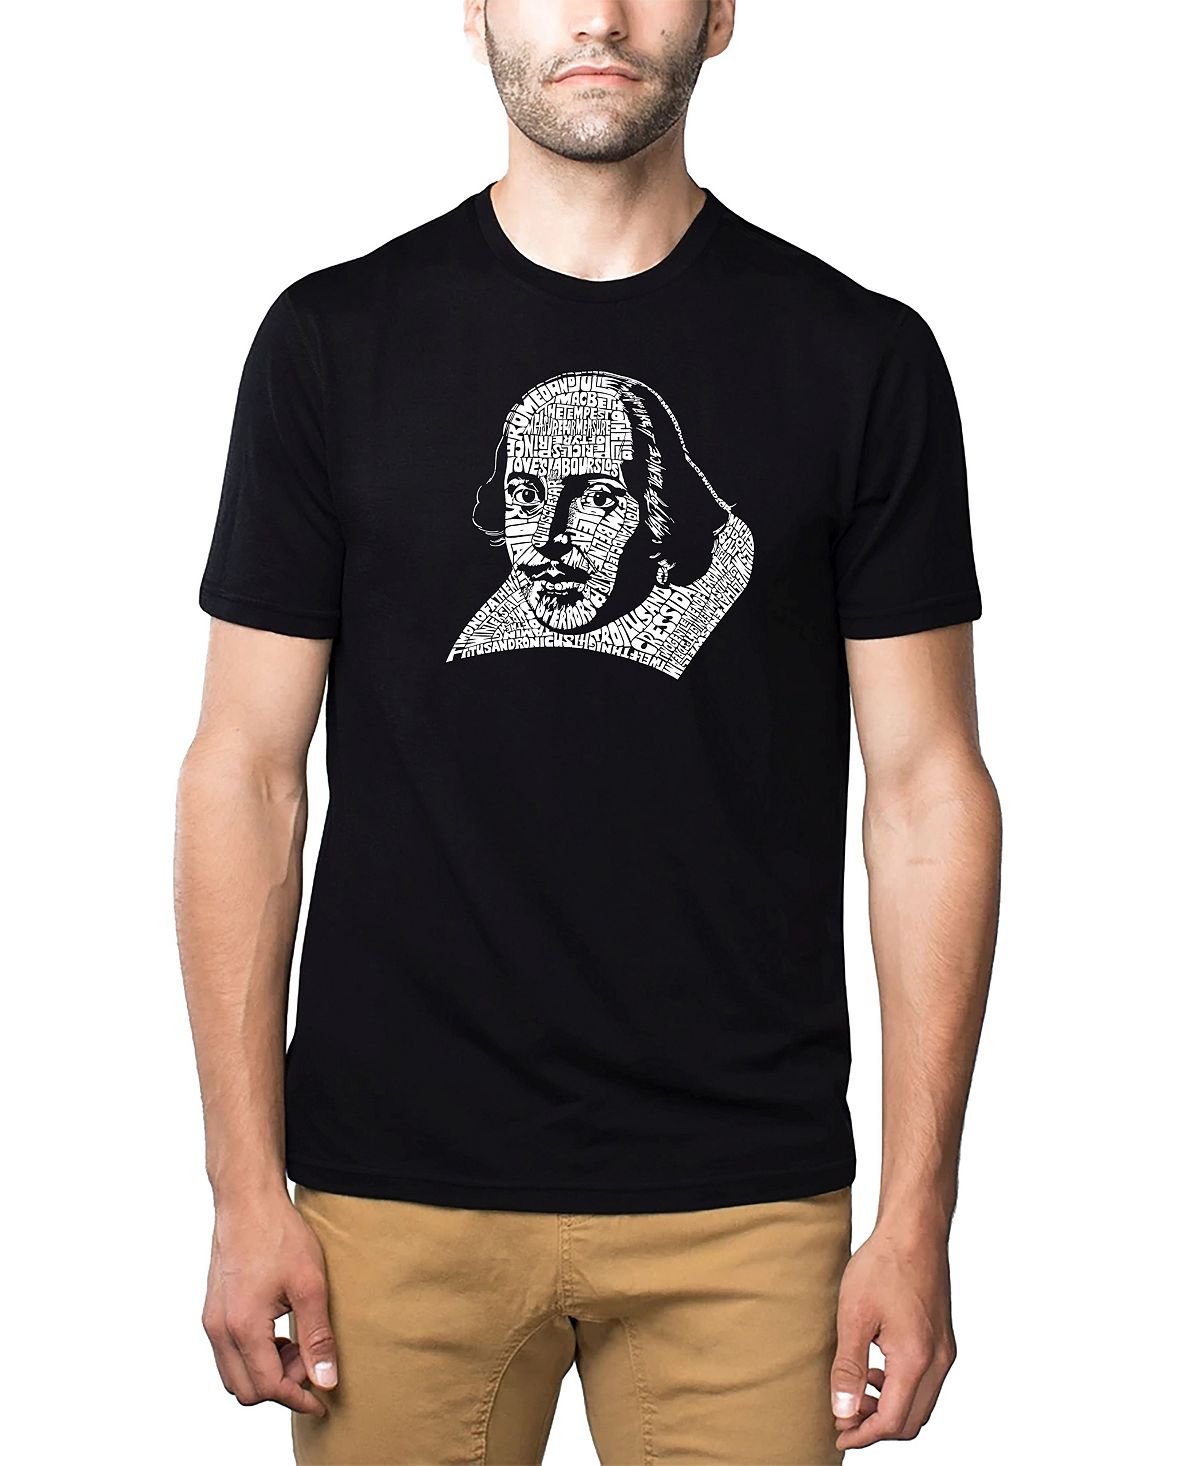 Мужская футболка премиум-класса word art - шекспир LA Pop Art, черный